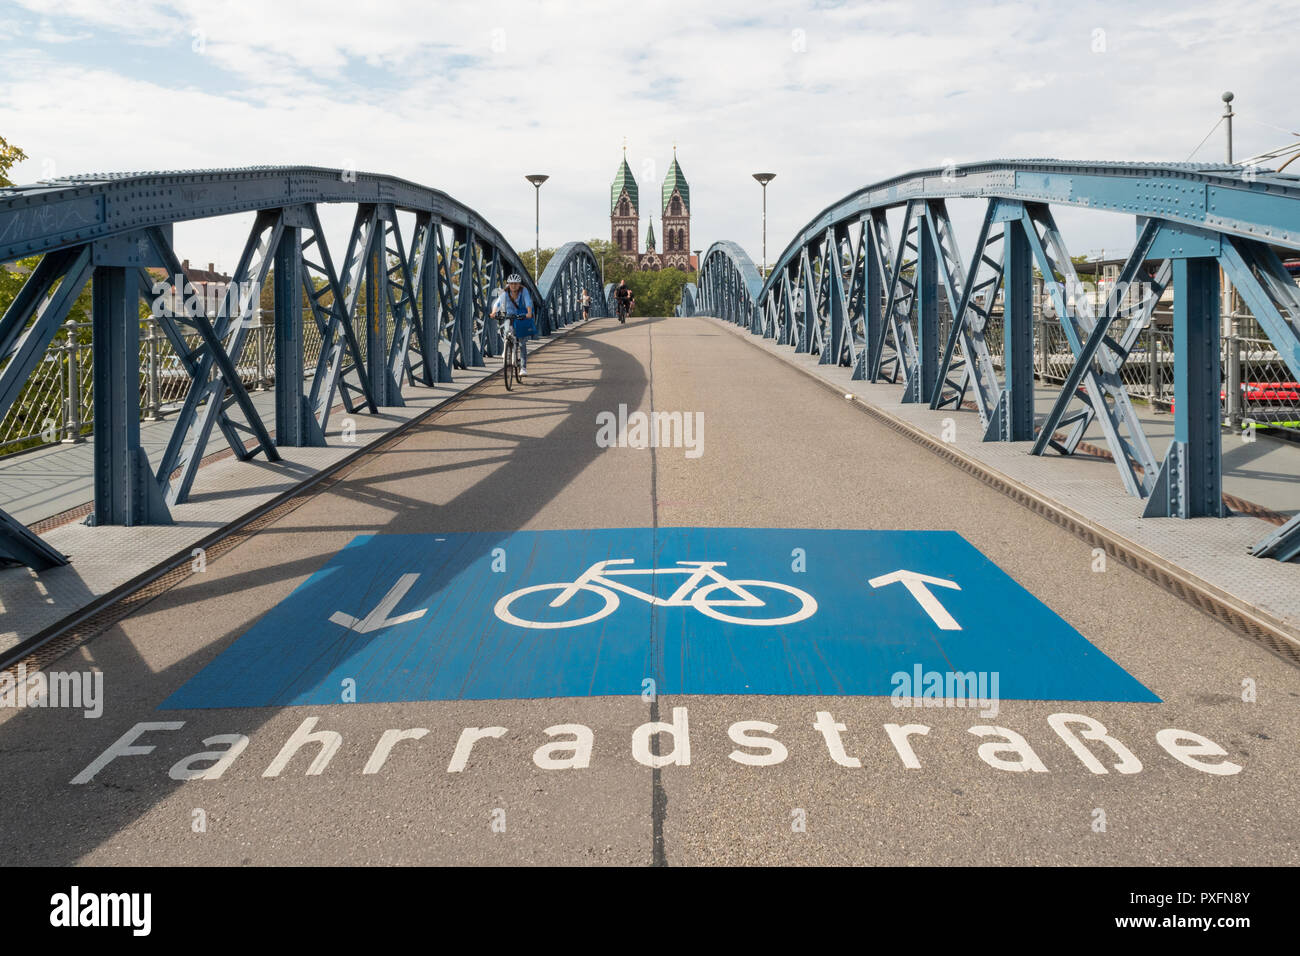 Rad weg - fahrradstrasse - und Symbol Logo auf der blauen Brücke oder Wiwili Brücke, Freiburg im Breisgau, Deutschland Stockfoto